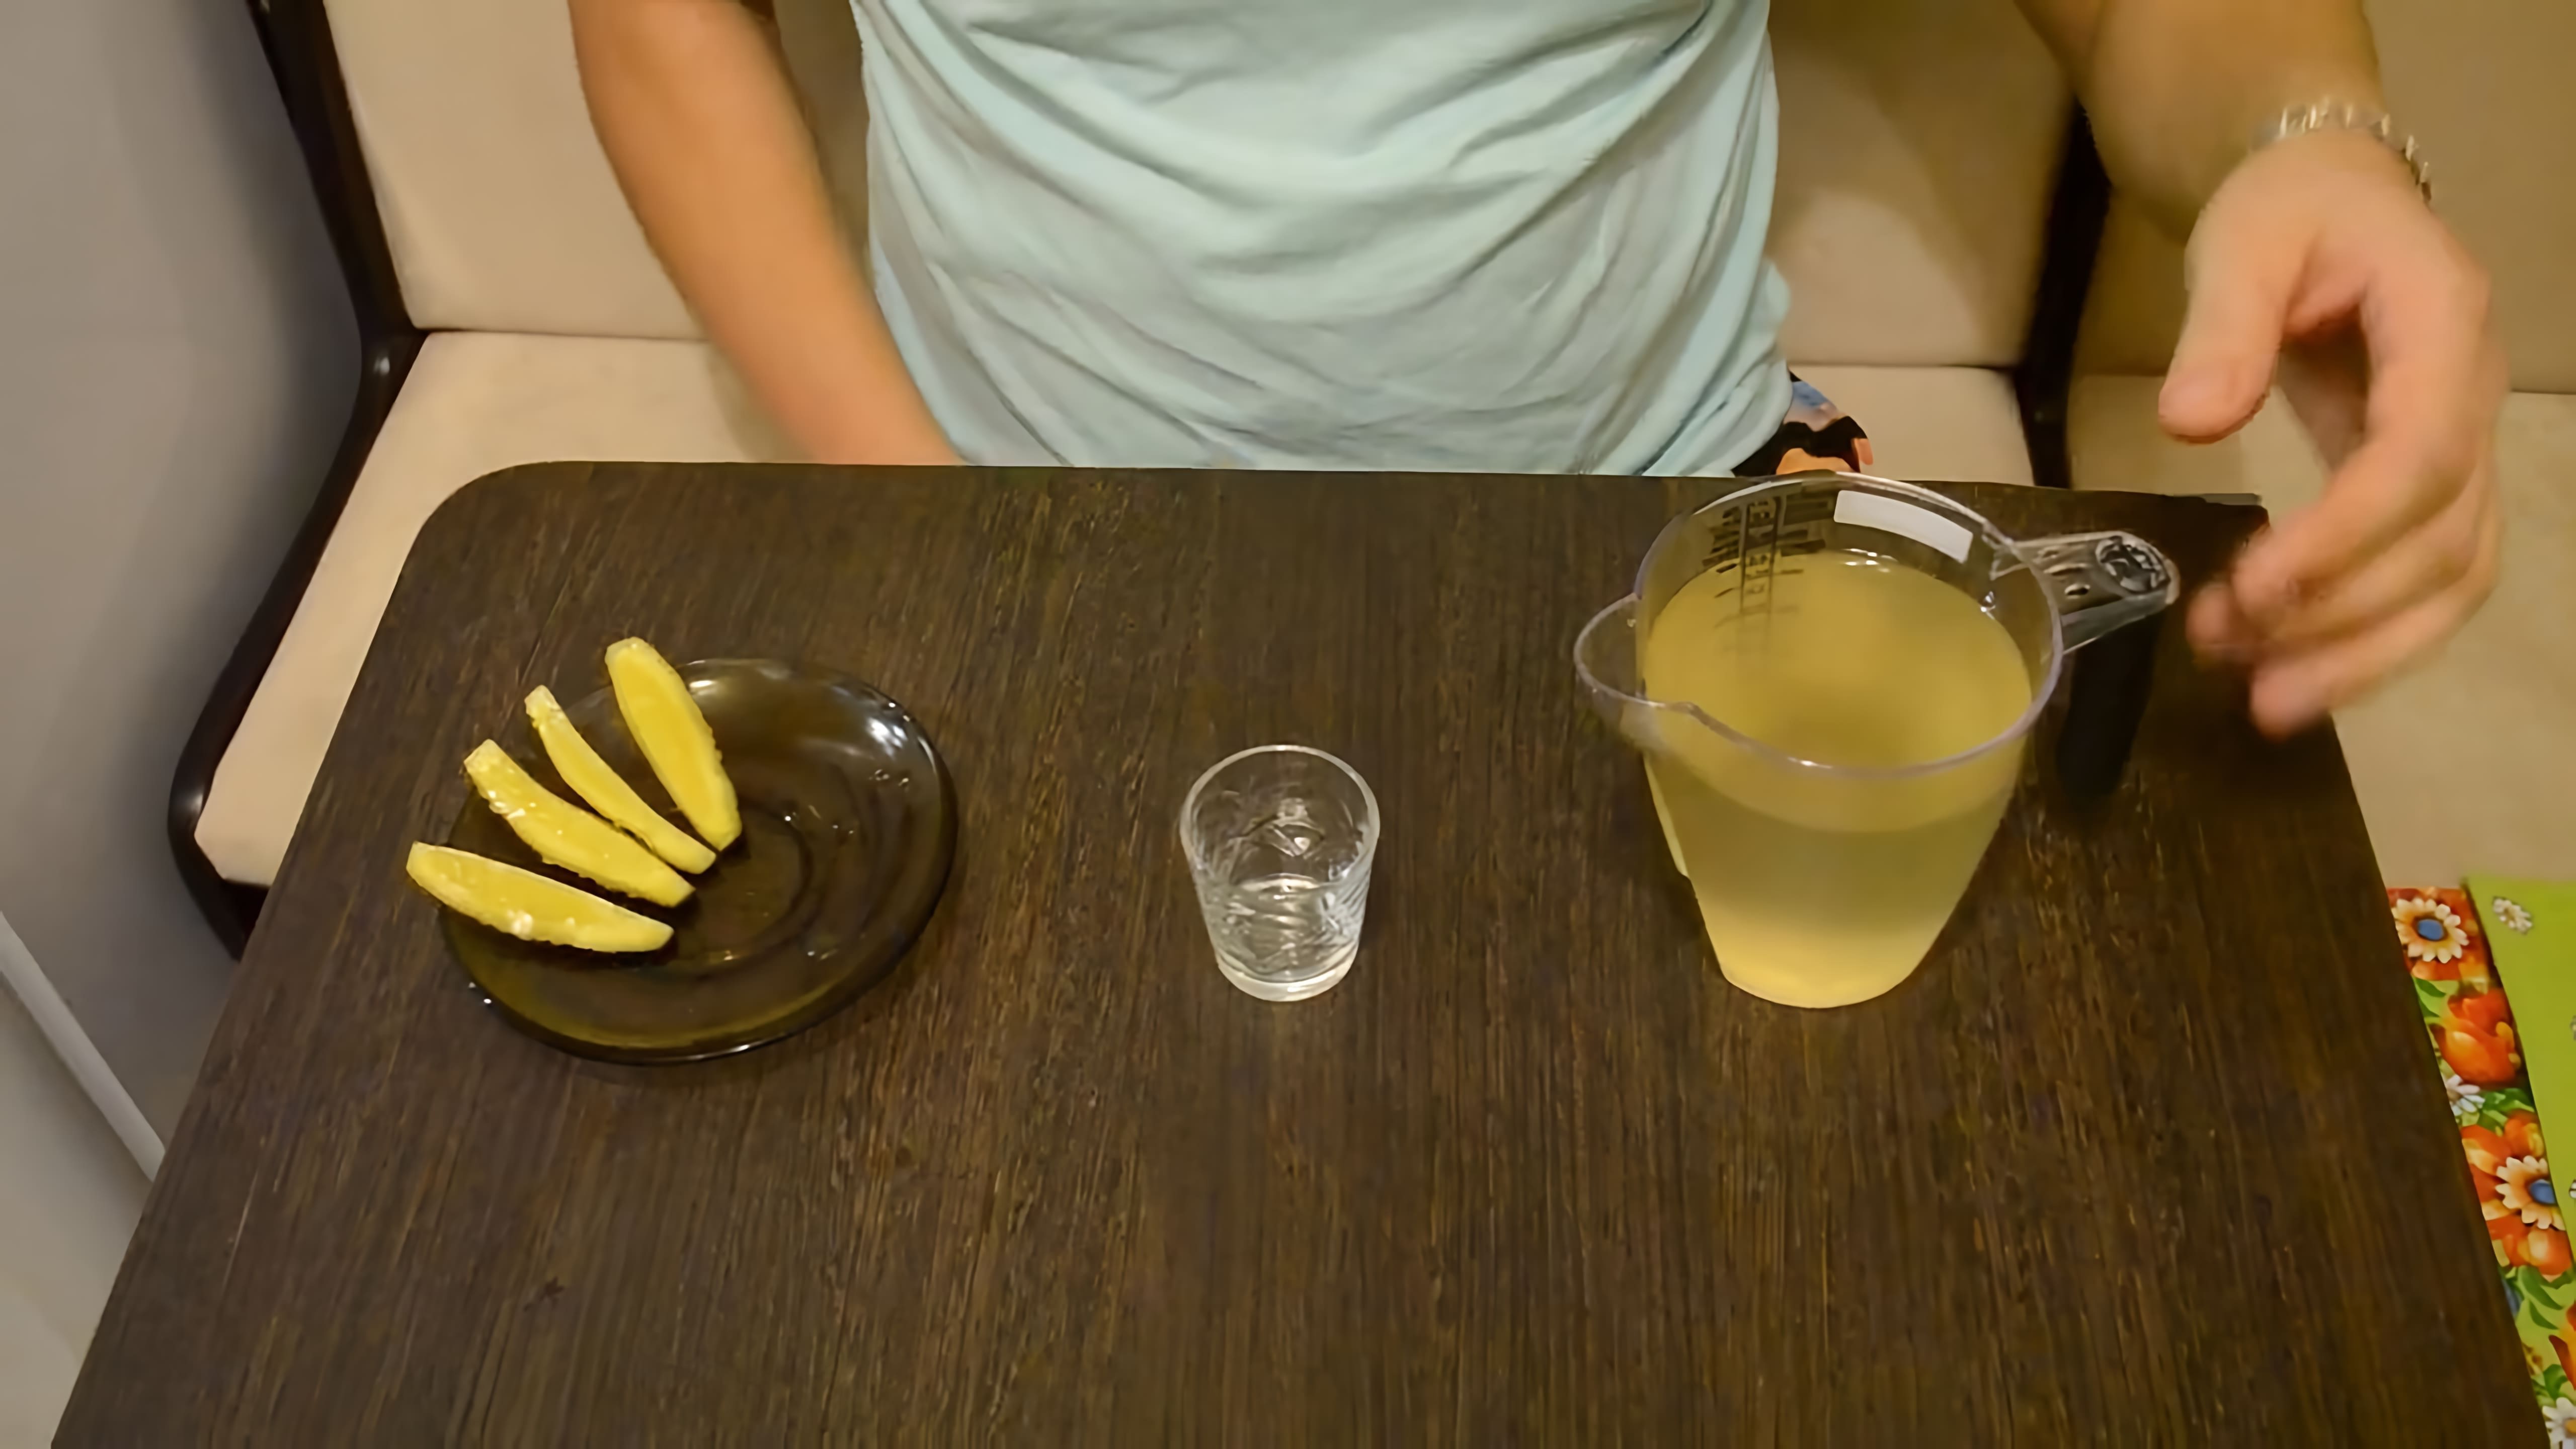 В этом видео демонстрируется процесс приготовления имбирной настойки на водке